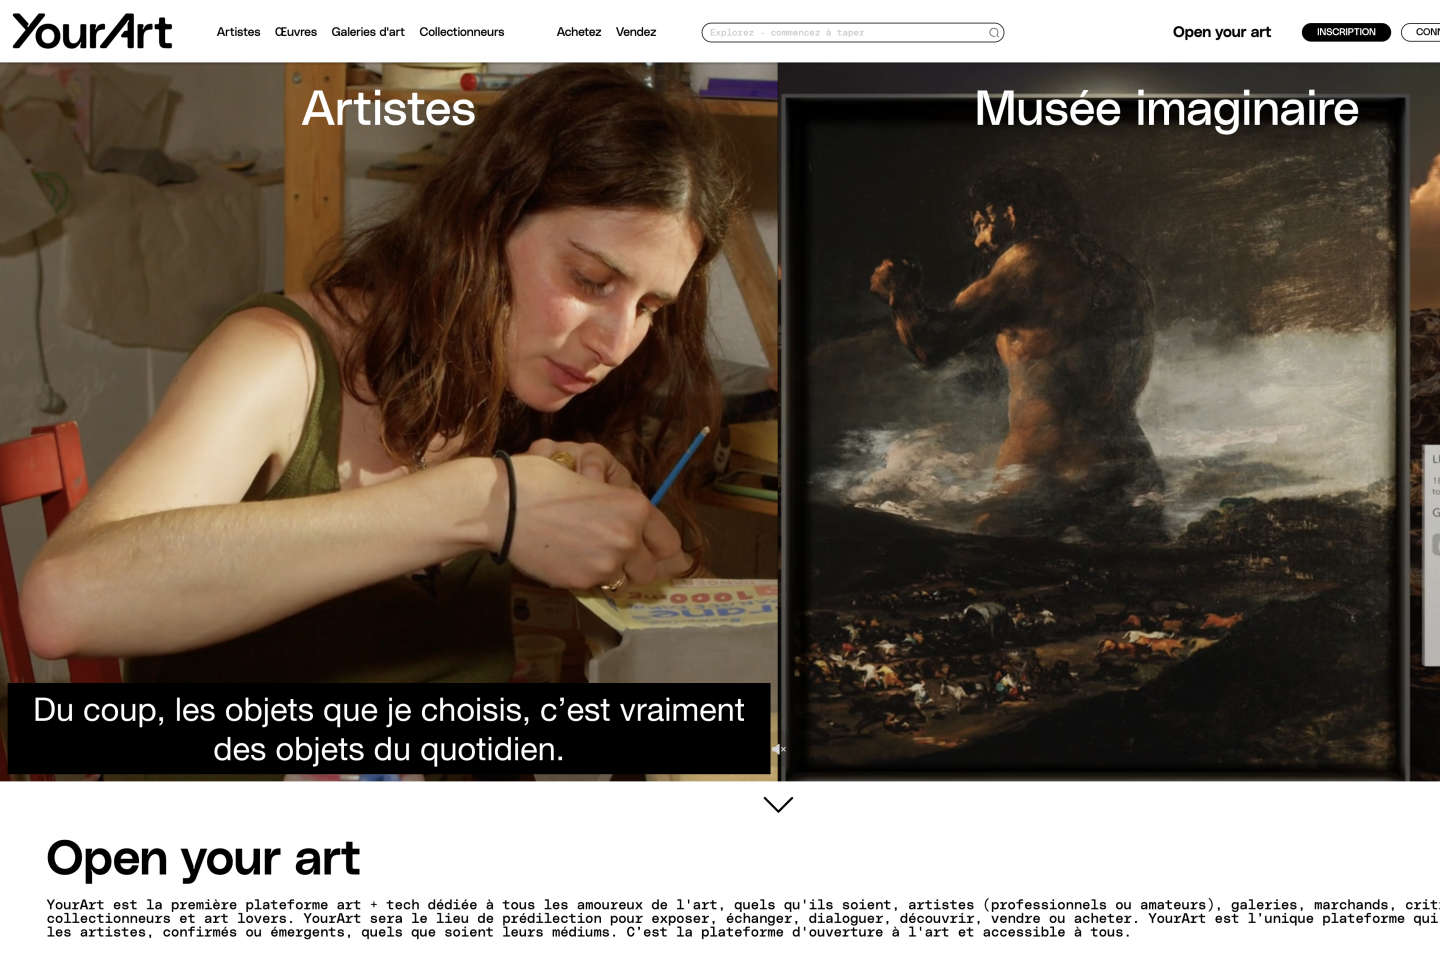 Maurice Lévy launches an online art platform, YourArt